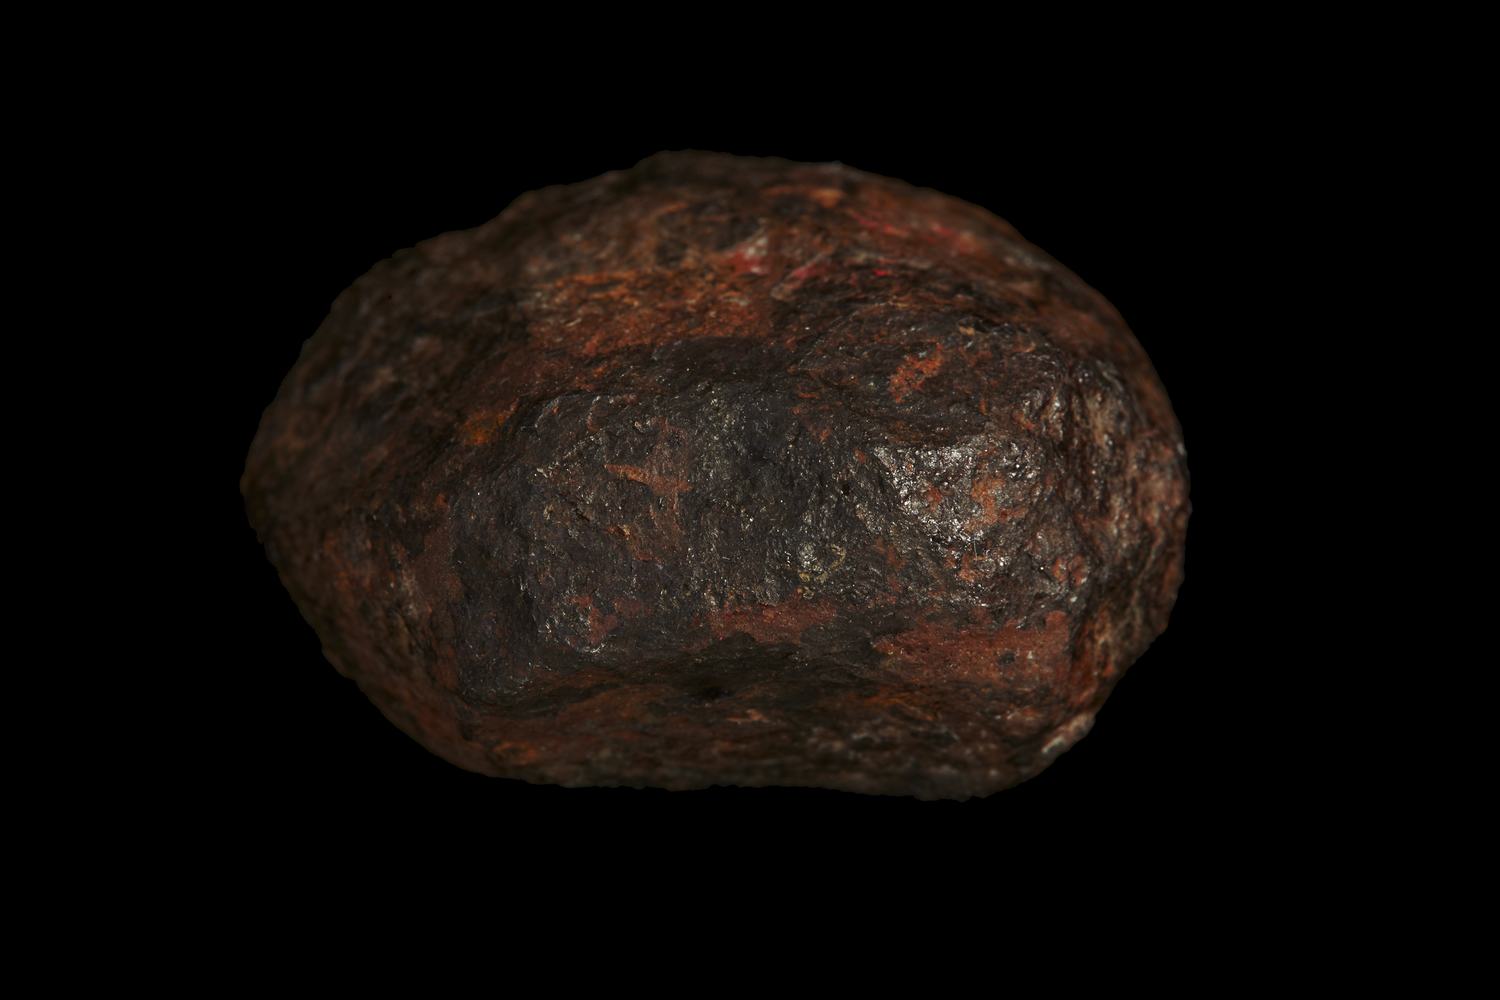 wedderburn meteorite